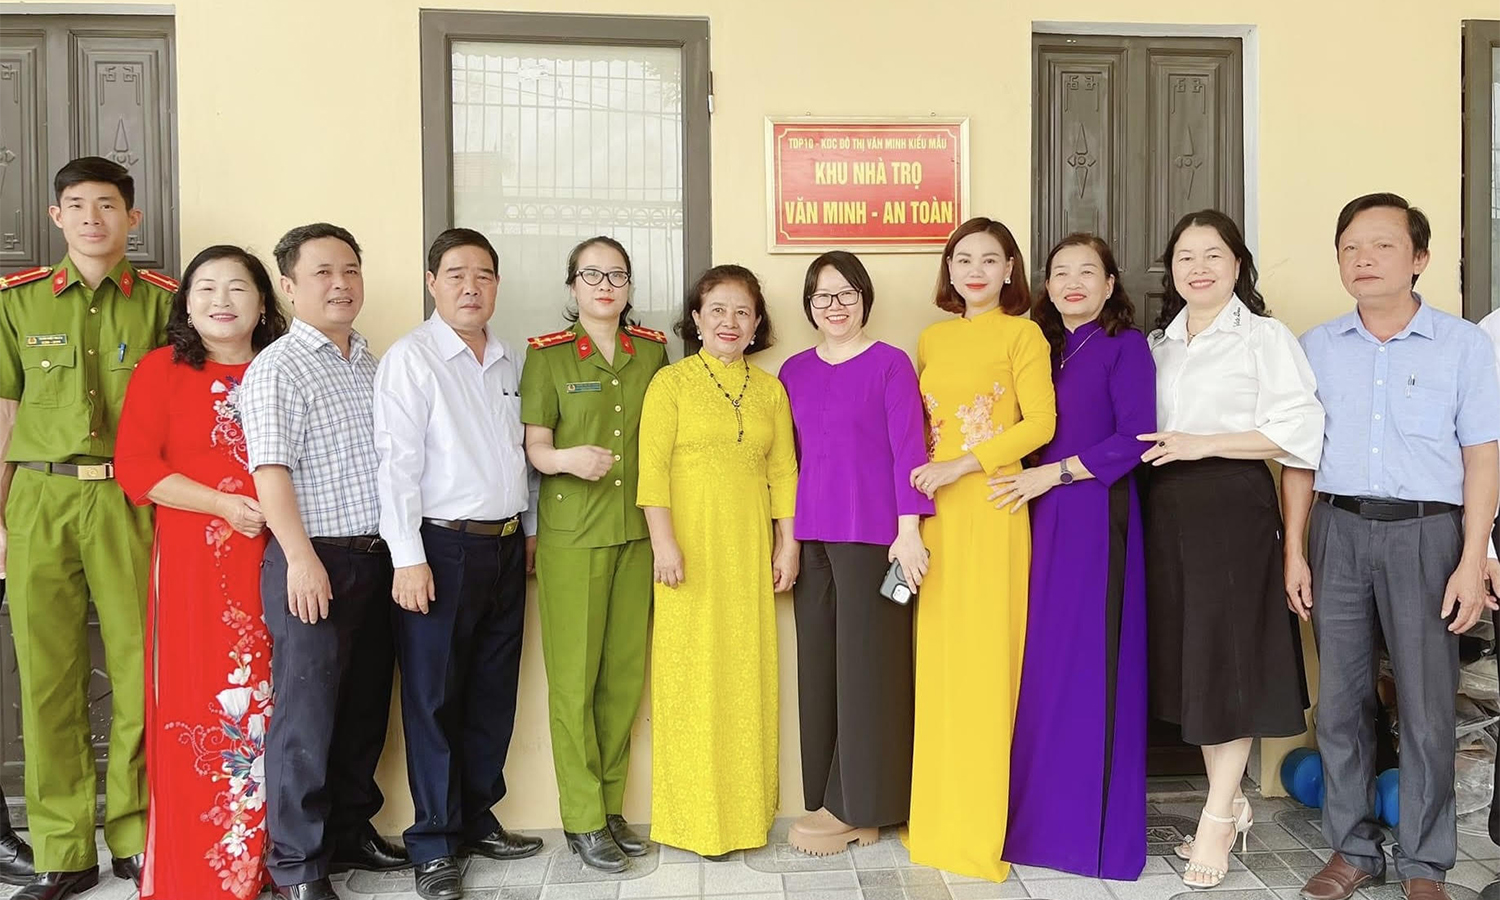 Ủy ban MTTQVN phường Đồng Phú (TP. Đồng Hới) tổ chức gắn biển mô hình “Khu nhà trọ văn minh-an toàn”.